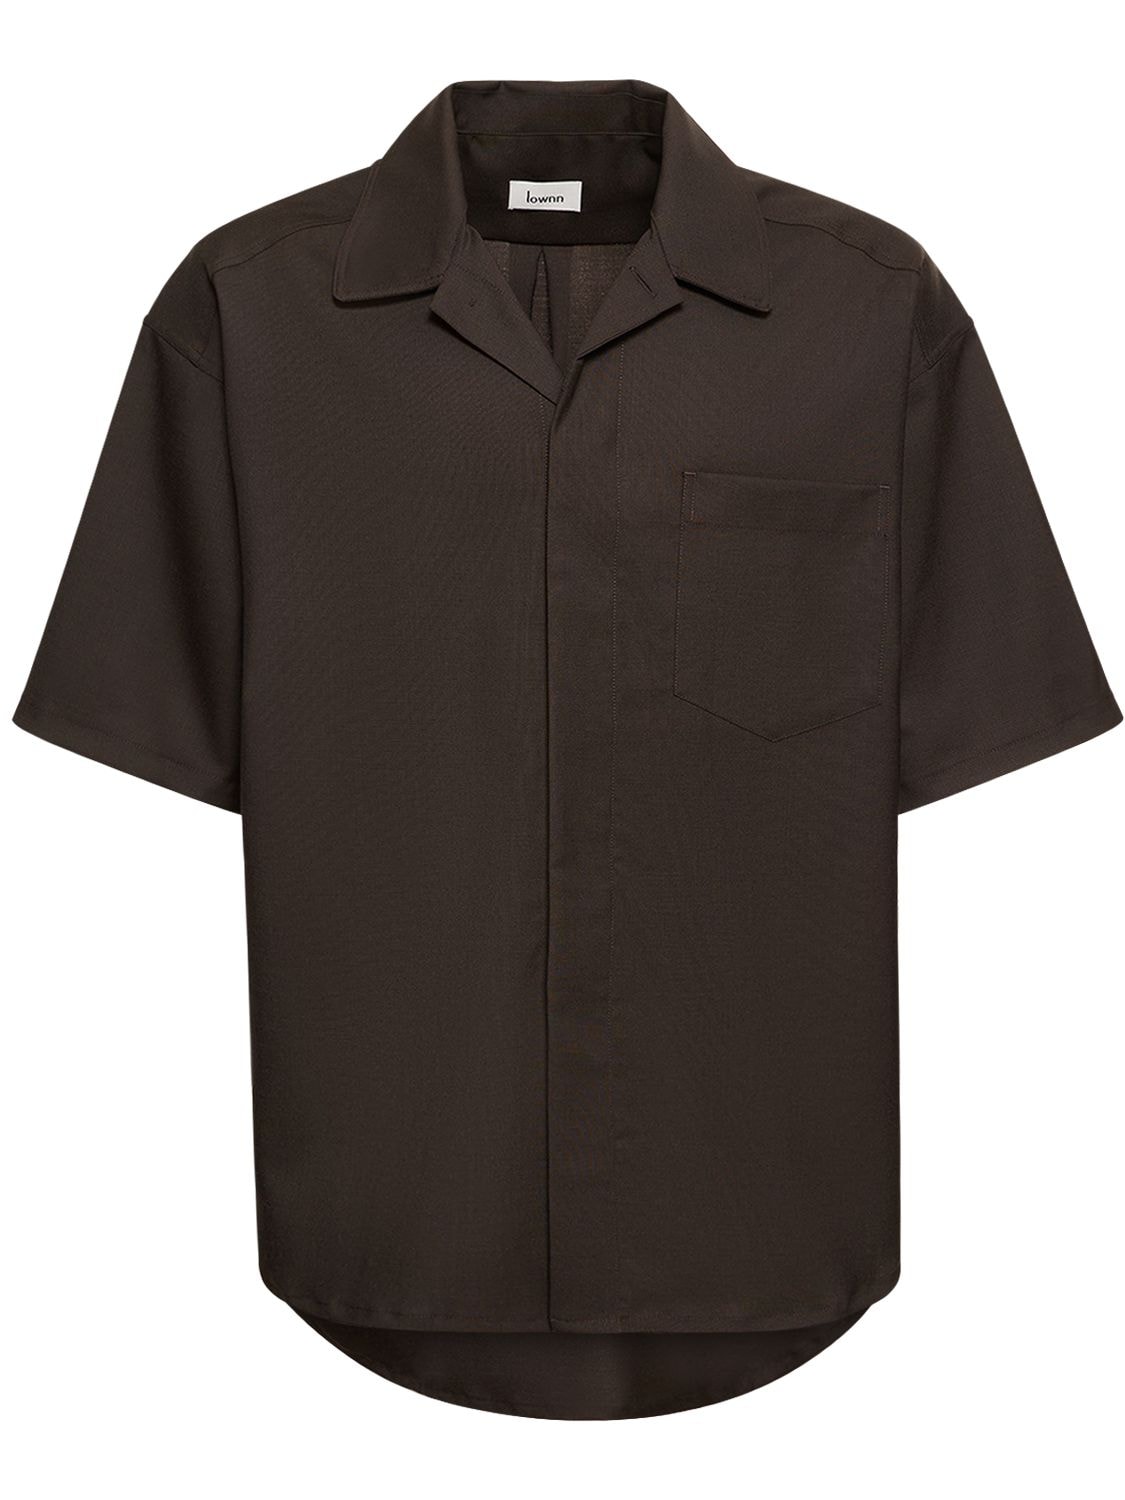 LOWNN Wool & Mohair S/s Shirt | Smart Closet